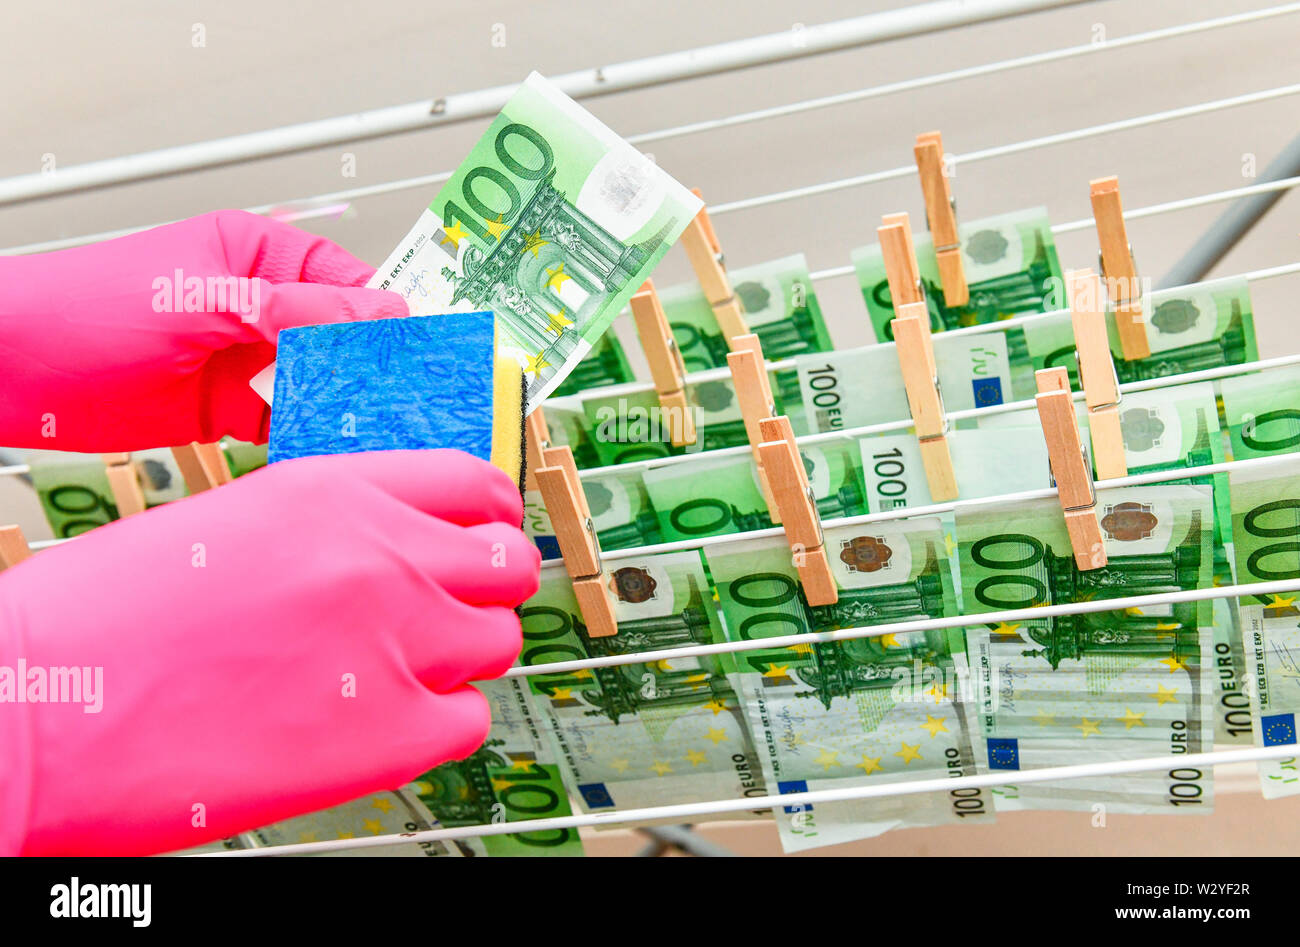 money laundering, Euro notes Stock Photo